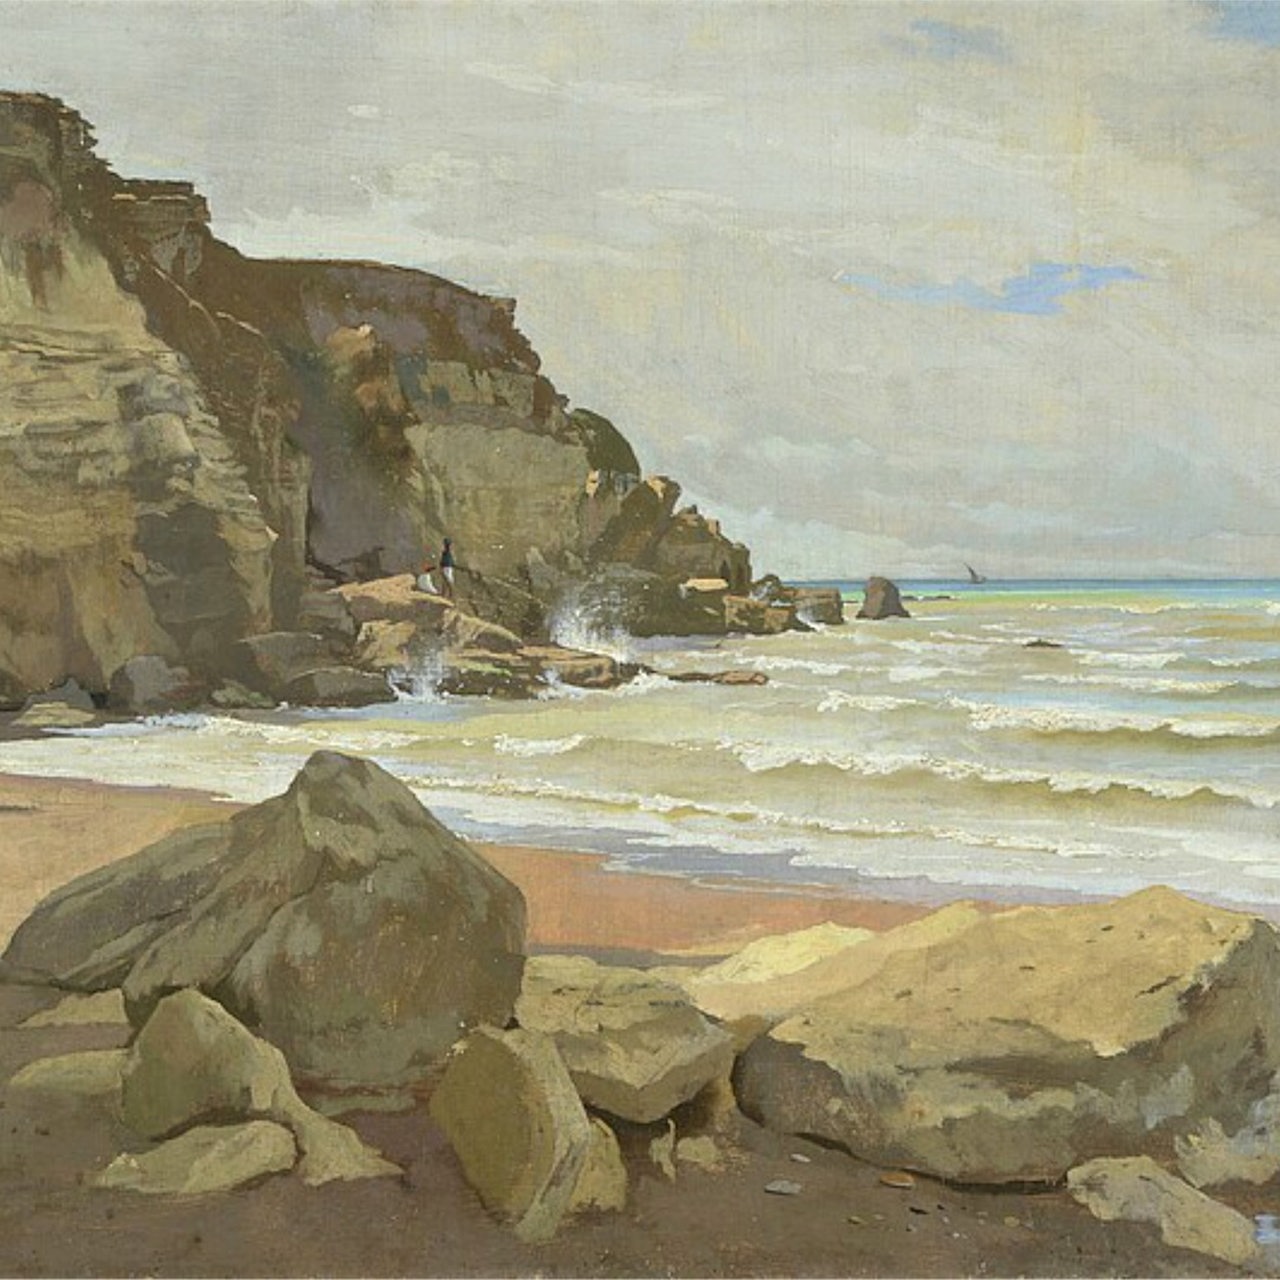 Gemälde: Anselm Feuerbach, Meeresküste, 1866